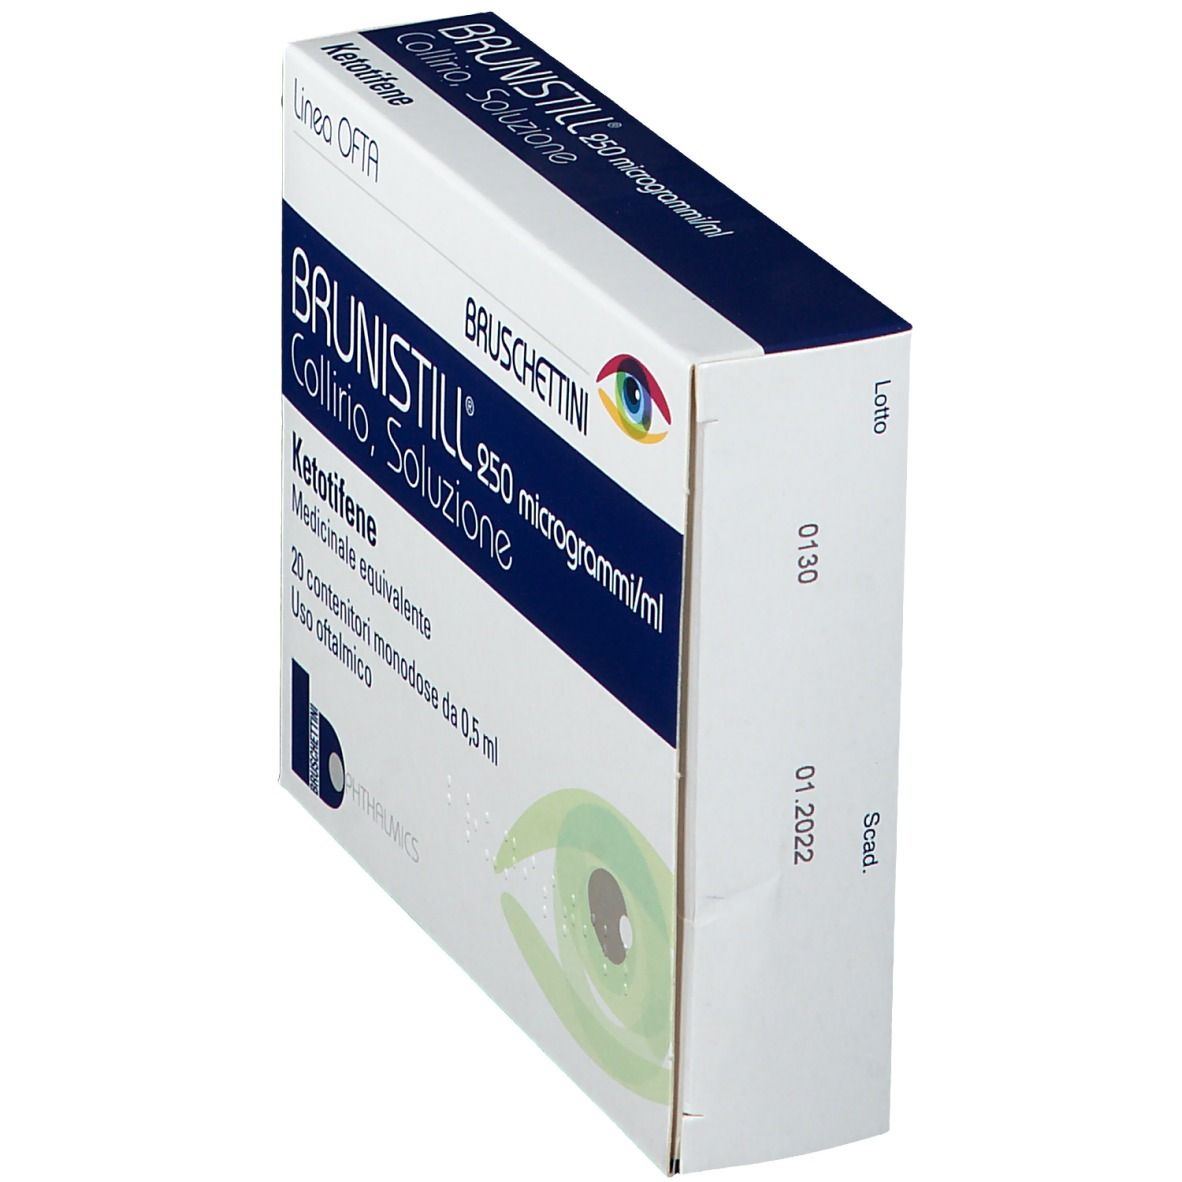 Brunistill® 250 microgrammi/ml Collirio, soluzione